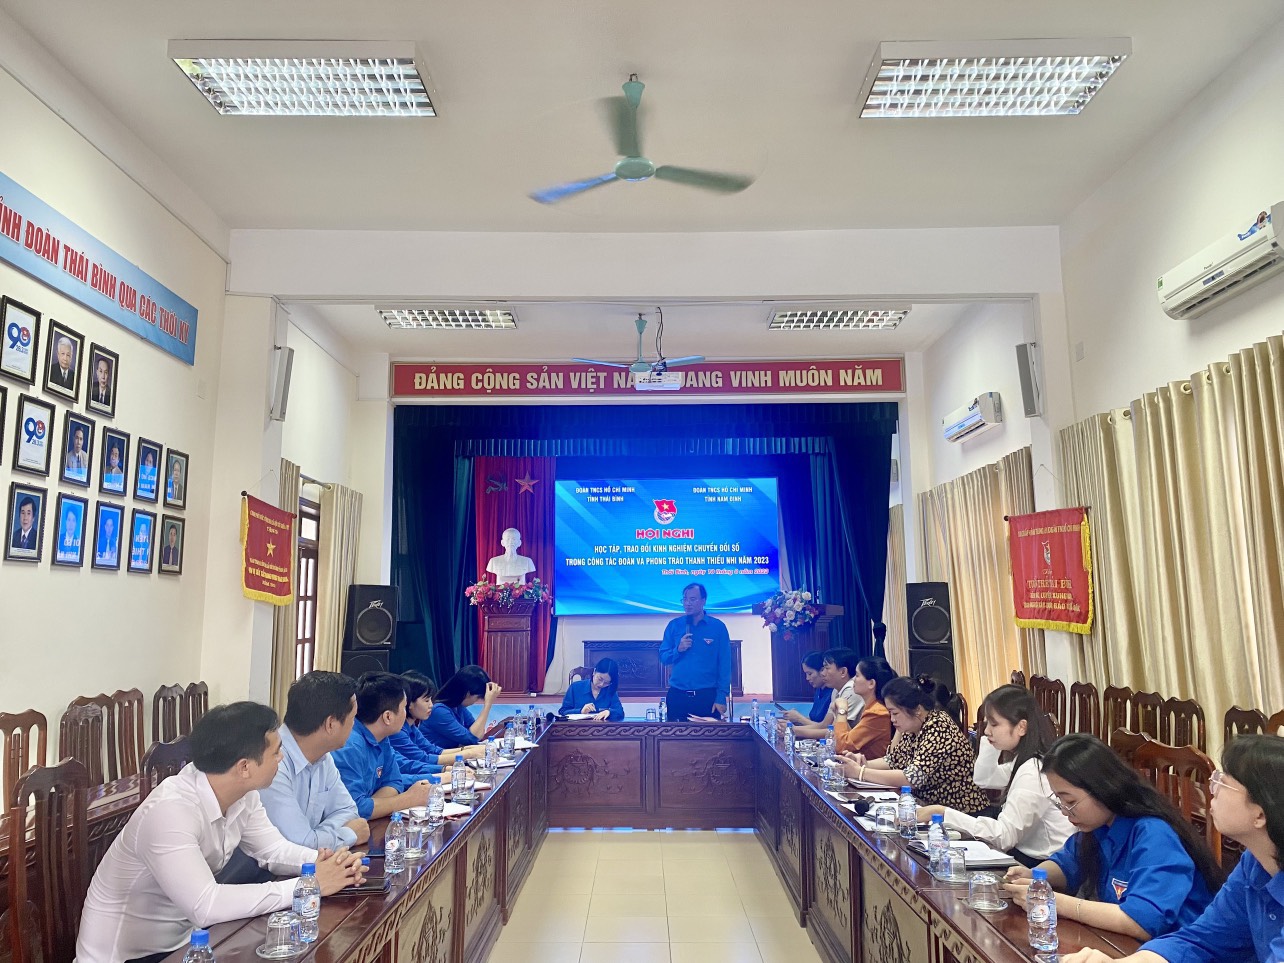 Thái Bình: Hội nghị học tập, trao đổi kinh nghiệm chuyển đổi số trong công tác Đoàn